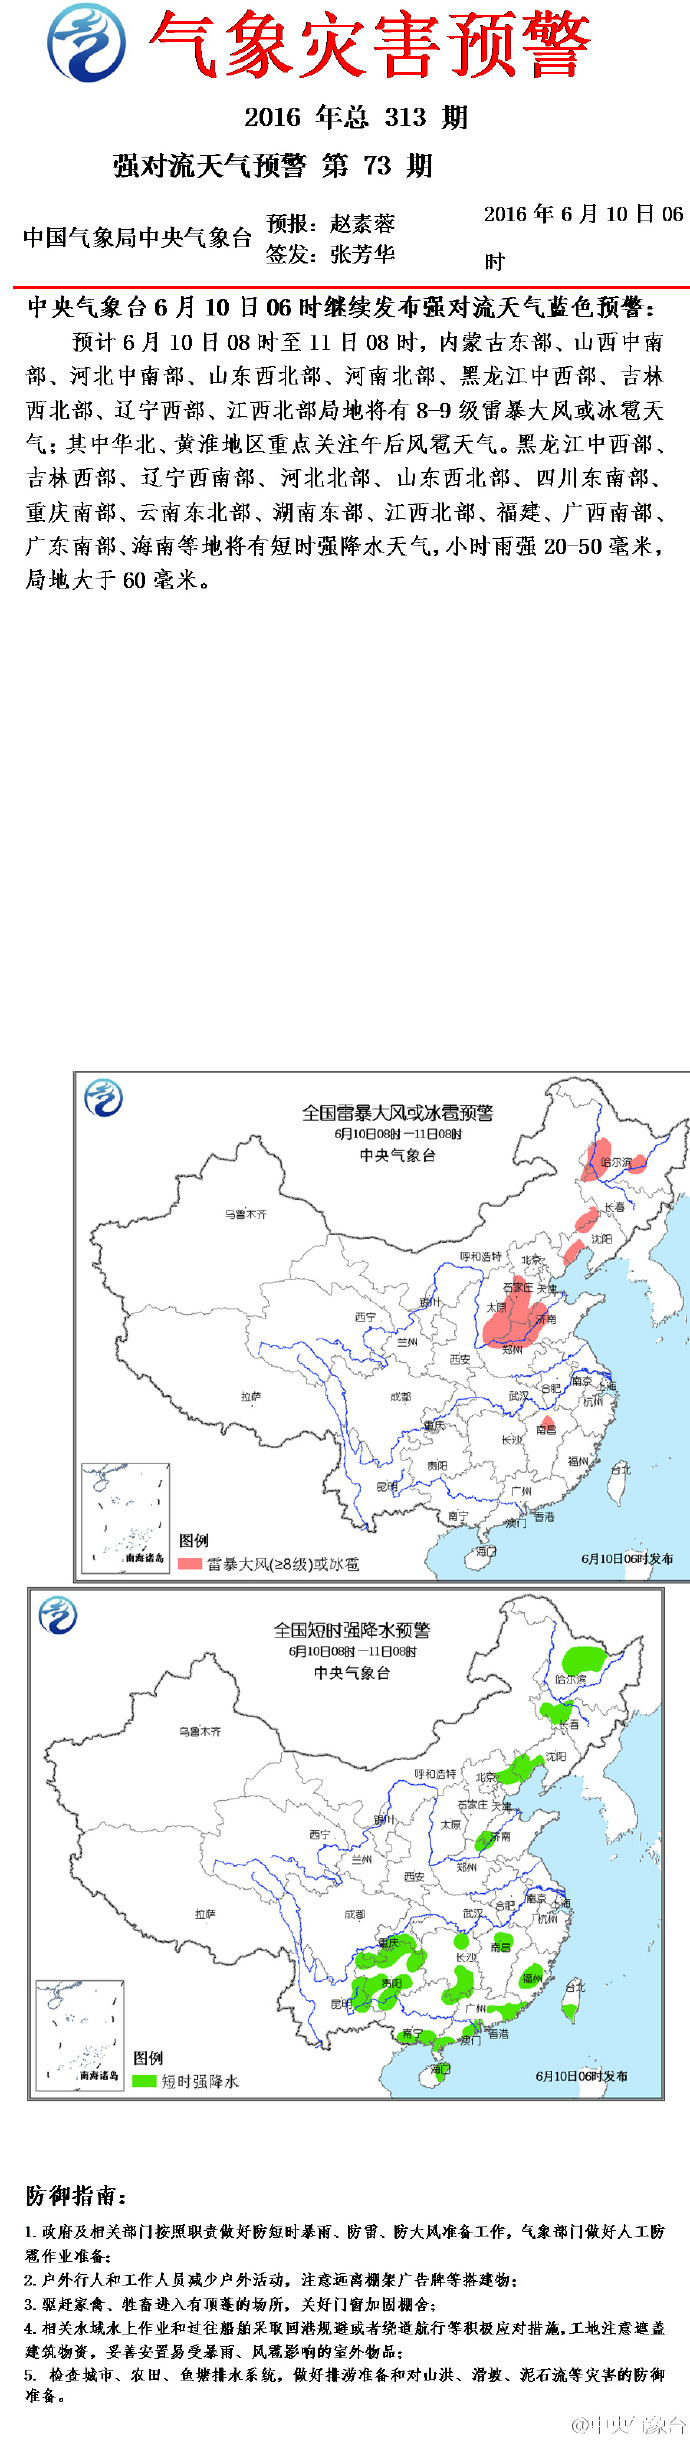 内蒙古、江西等9省份将有雷暴大风或冰雹天气(图)